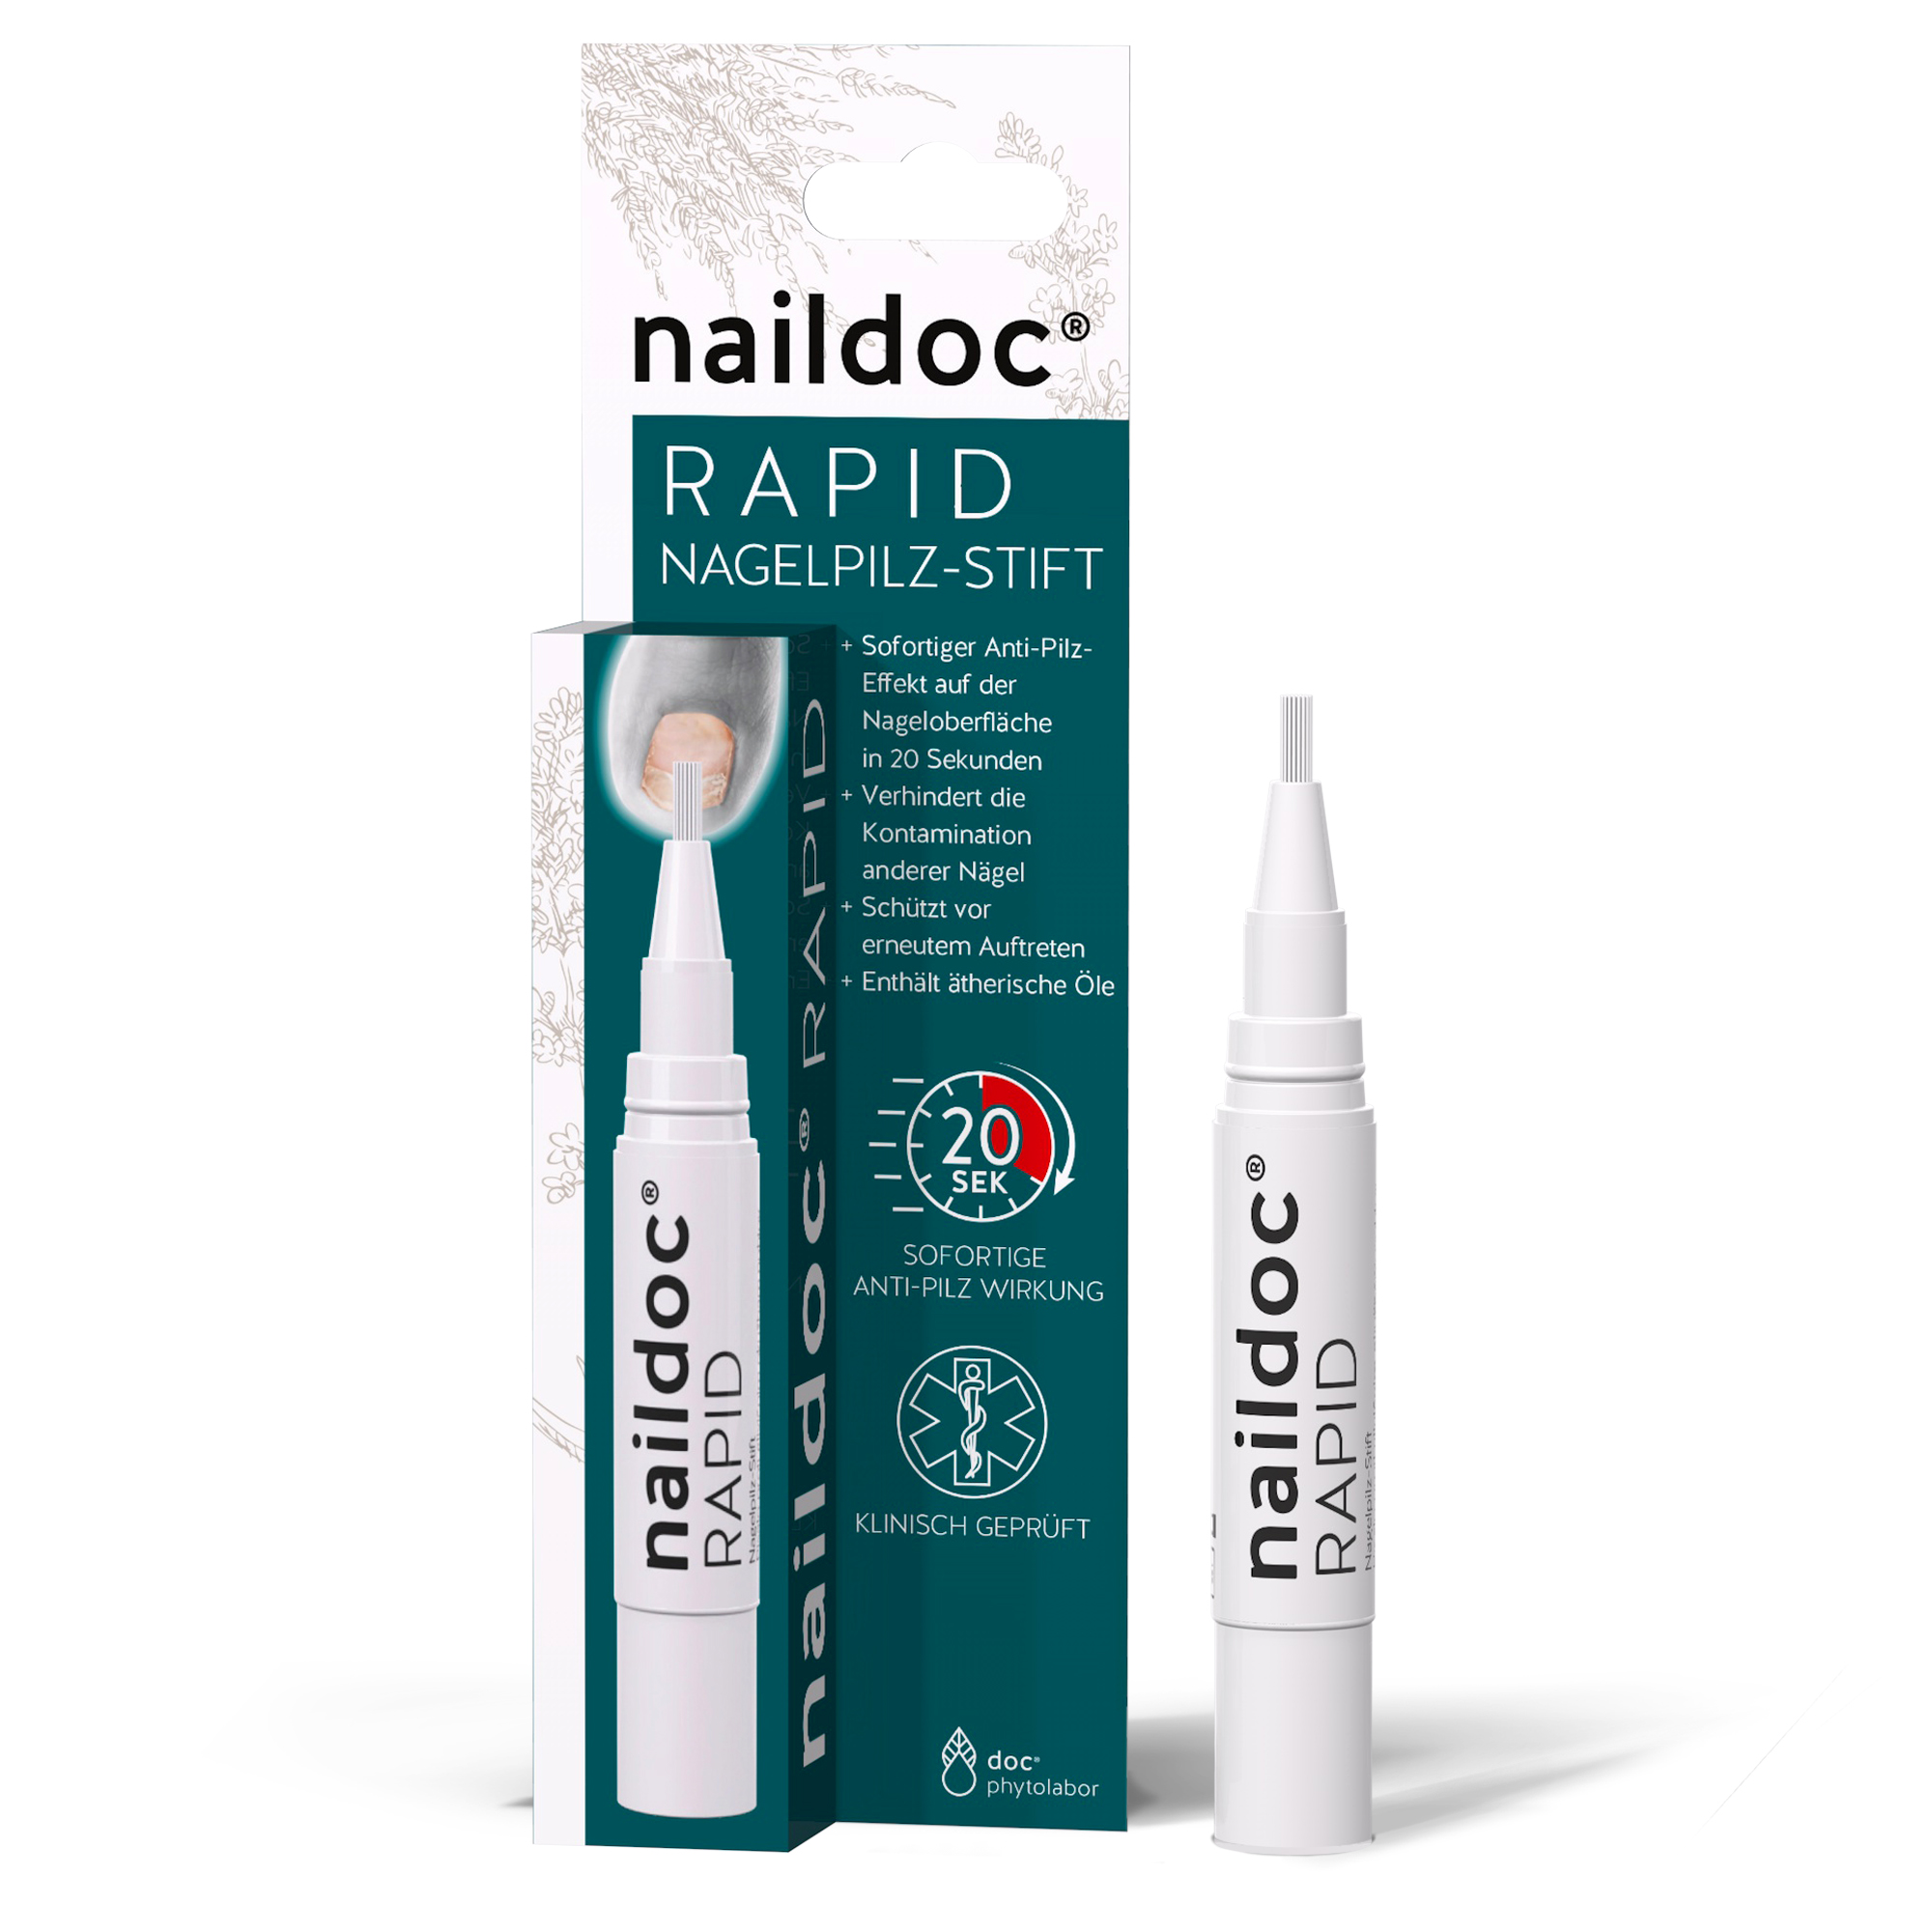 naildoc®  RAPID NAGELPILZ-STIFT